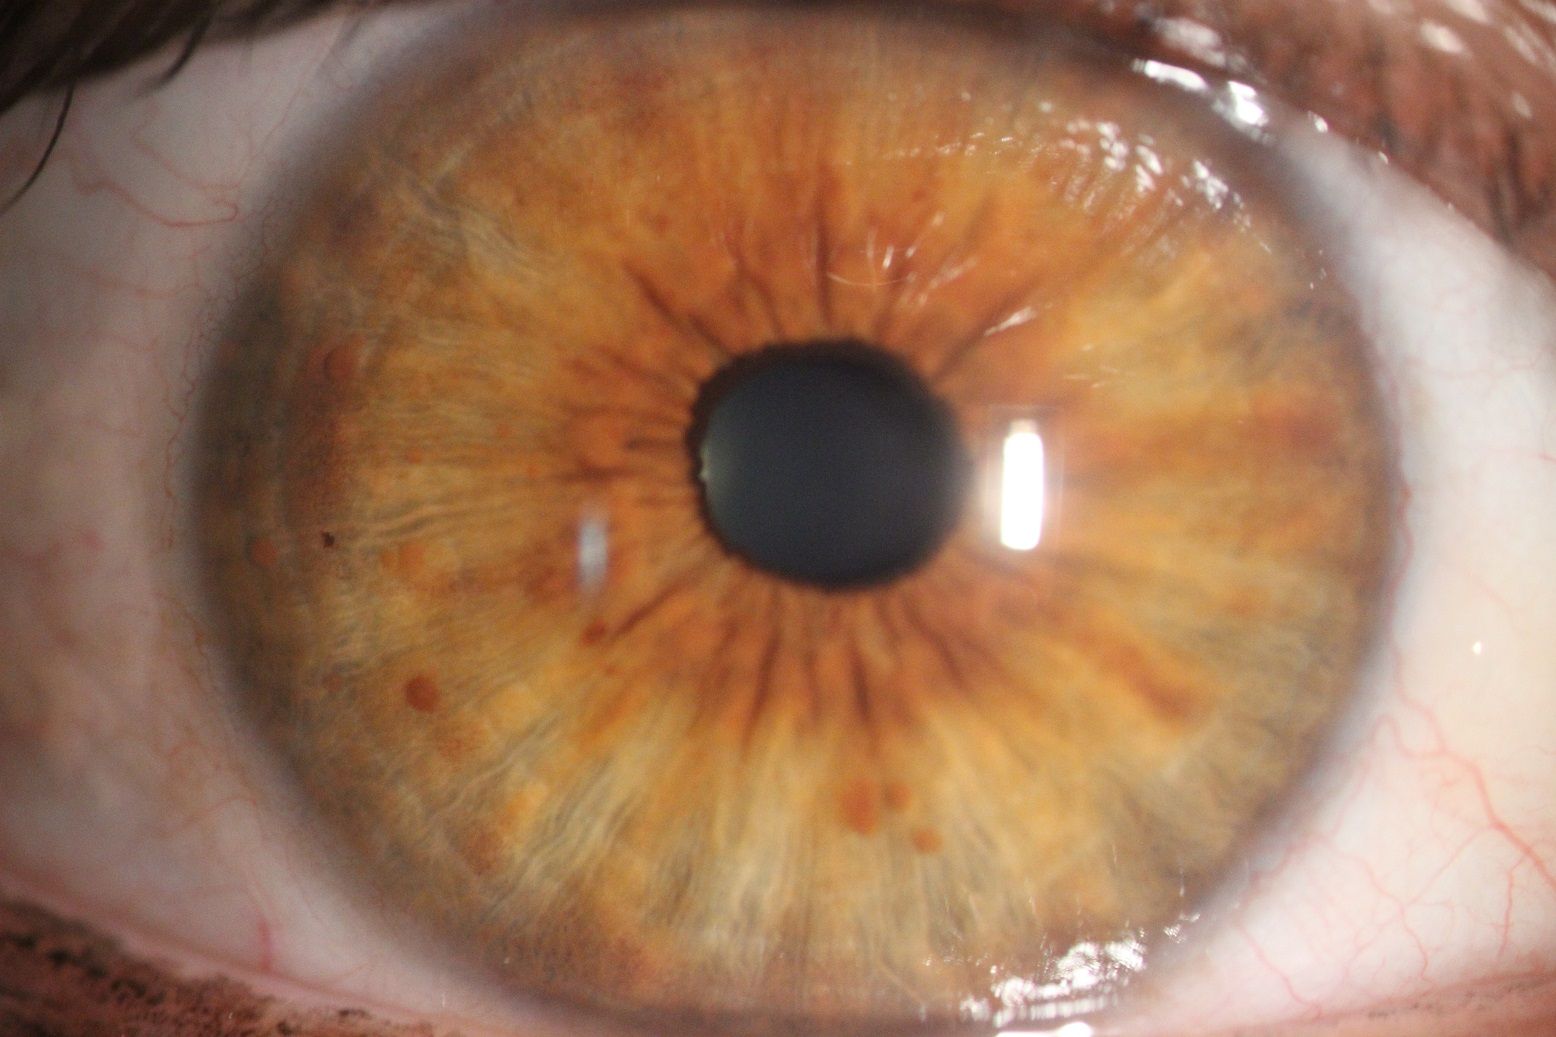 Tęczówka oka koloru brązowego z małą czarną źrenicą. 